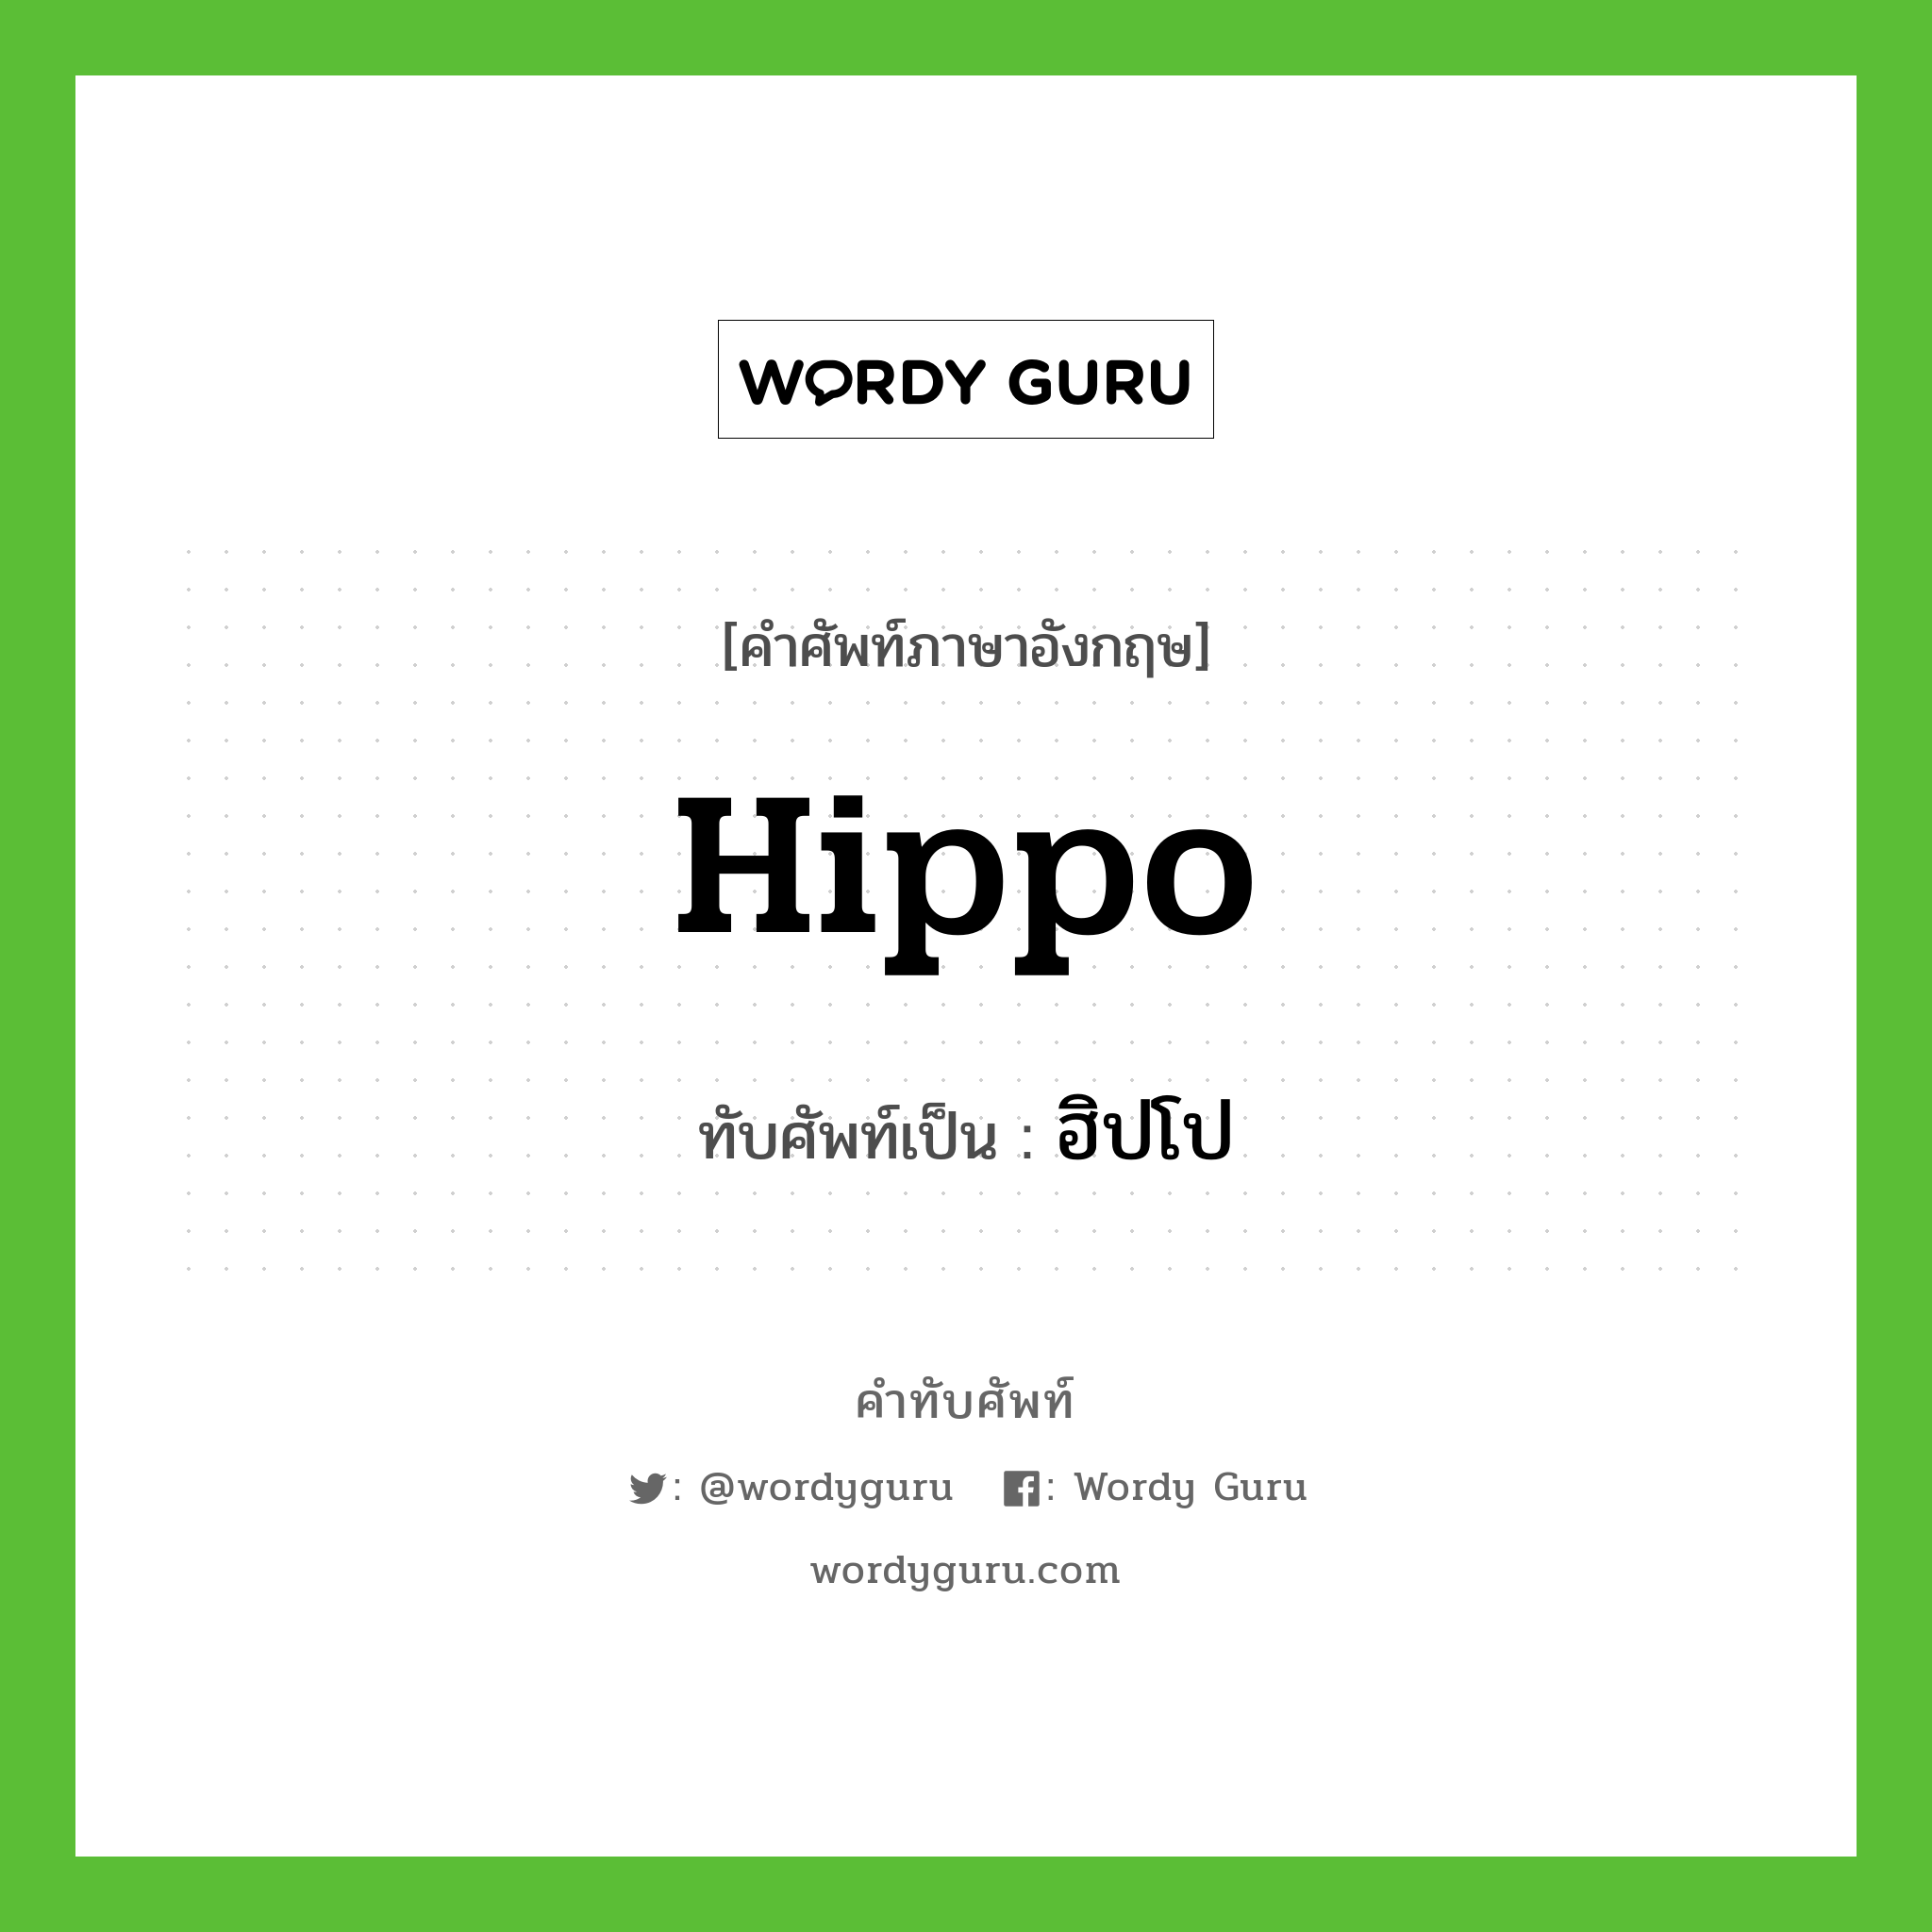 hippo เขียนเป็นคำไทยว่าอะไร?, คำศัพท์ภาษาอังกฤษ hippo ทับศัพท์เป็น ฮิปโป